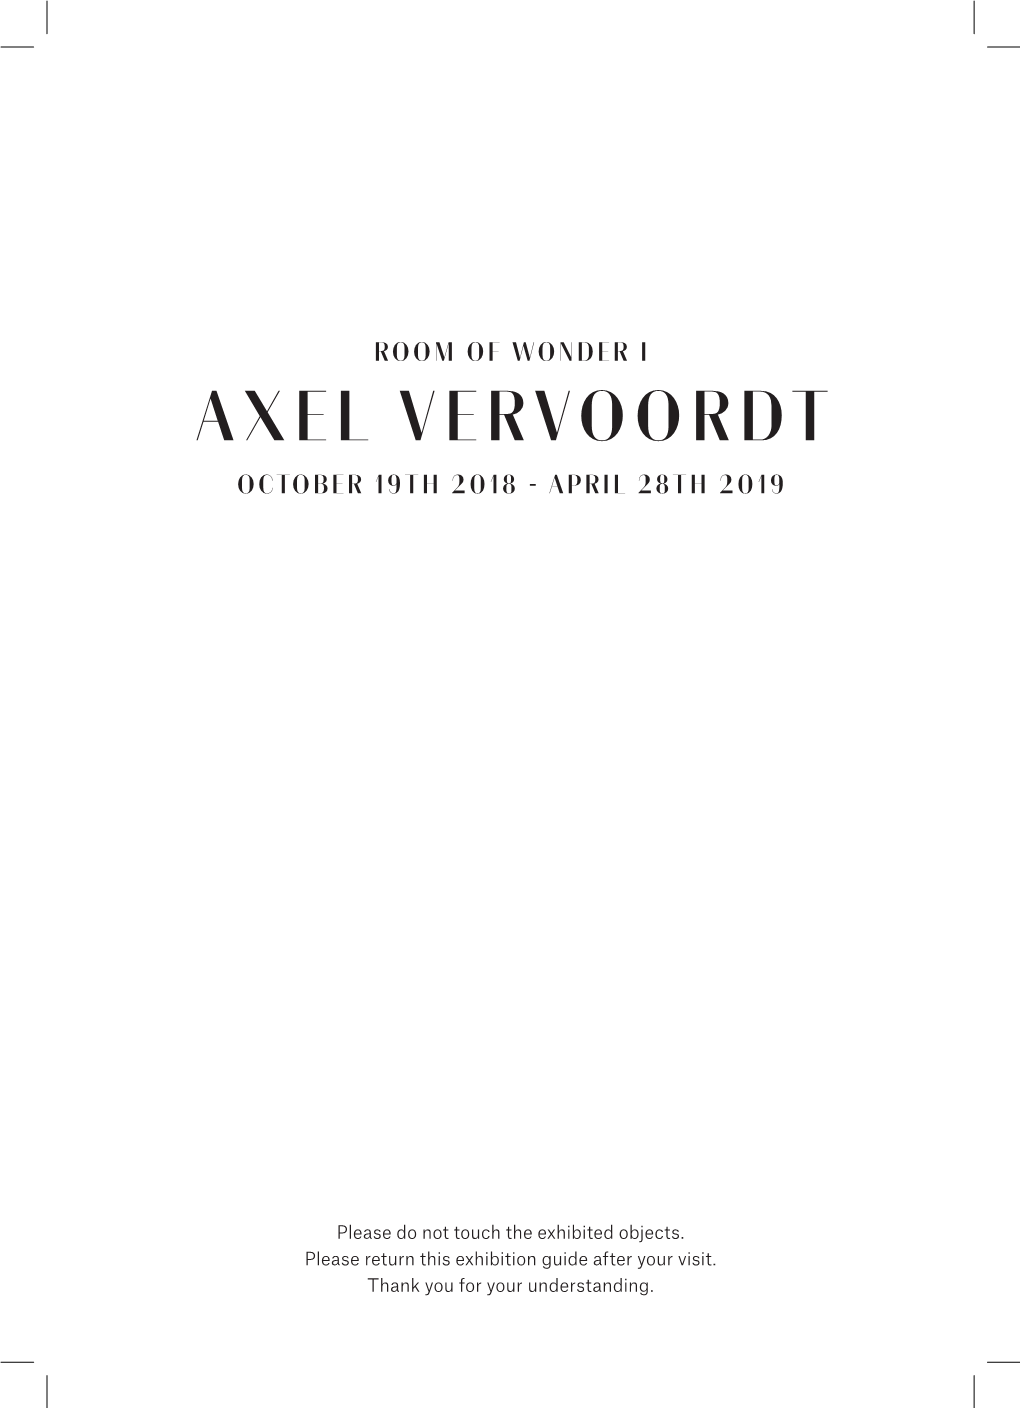 Axel Vervoordt October 19Th 2018 - April 28Th 2019